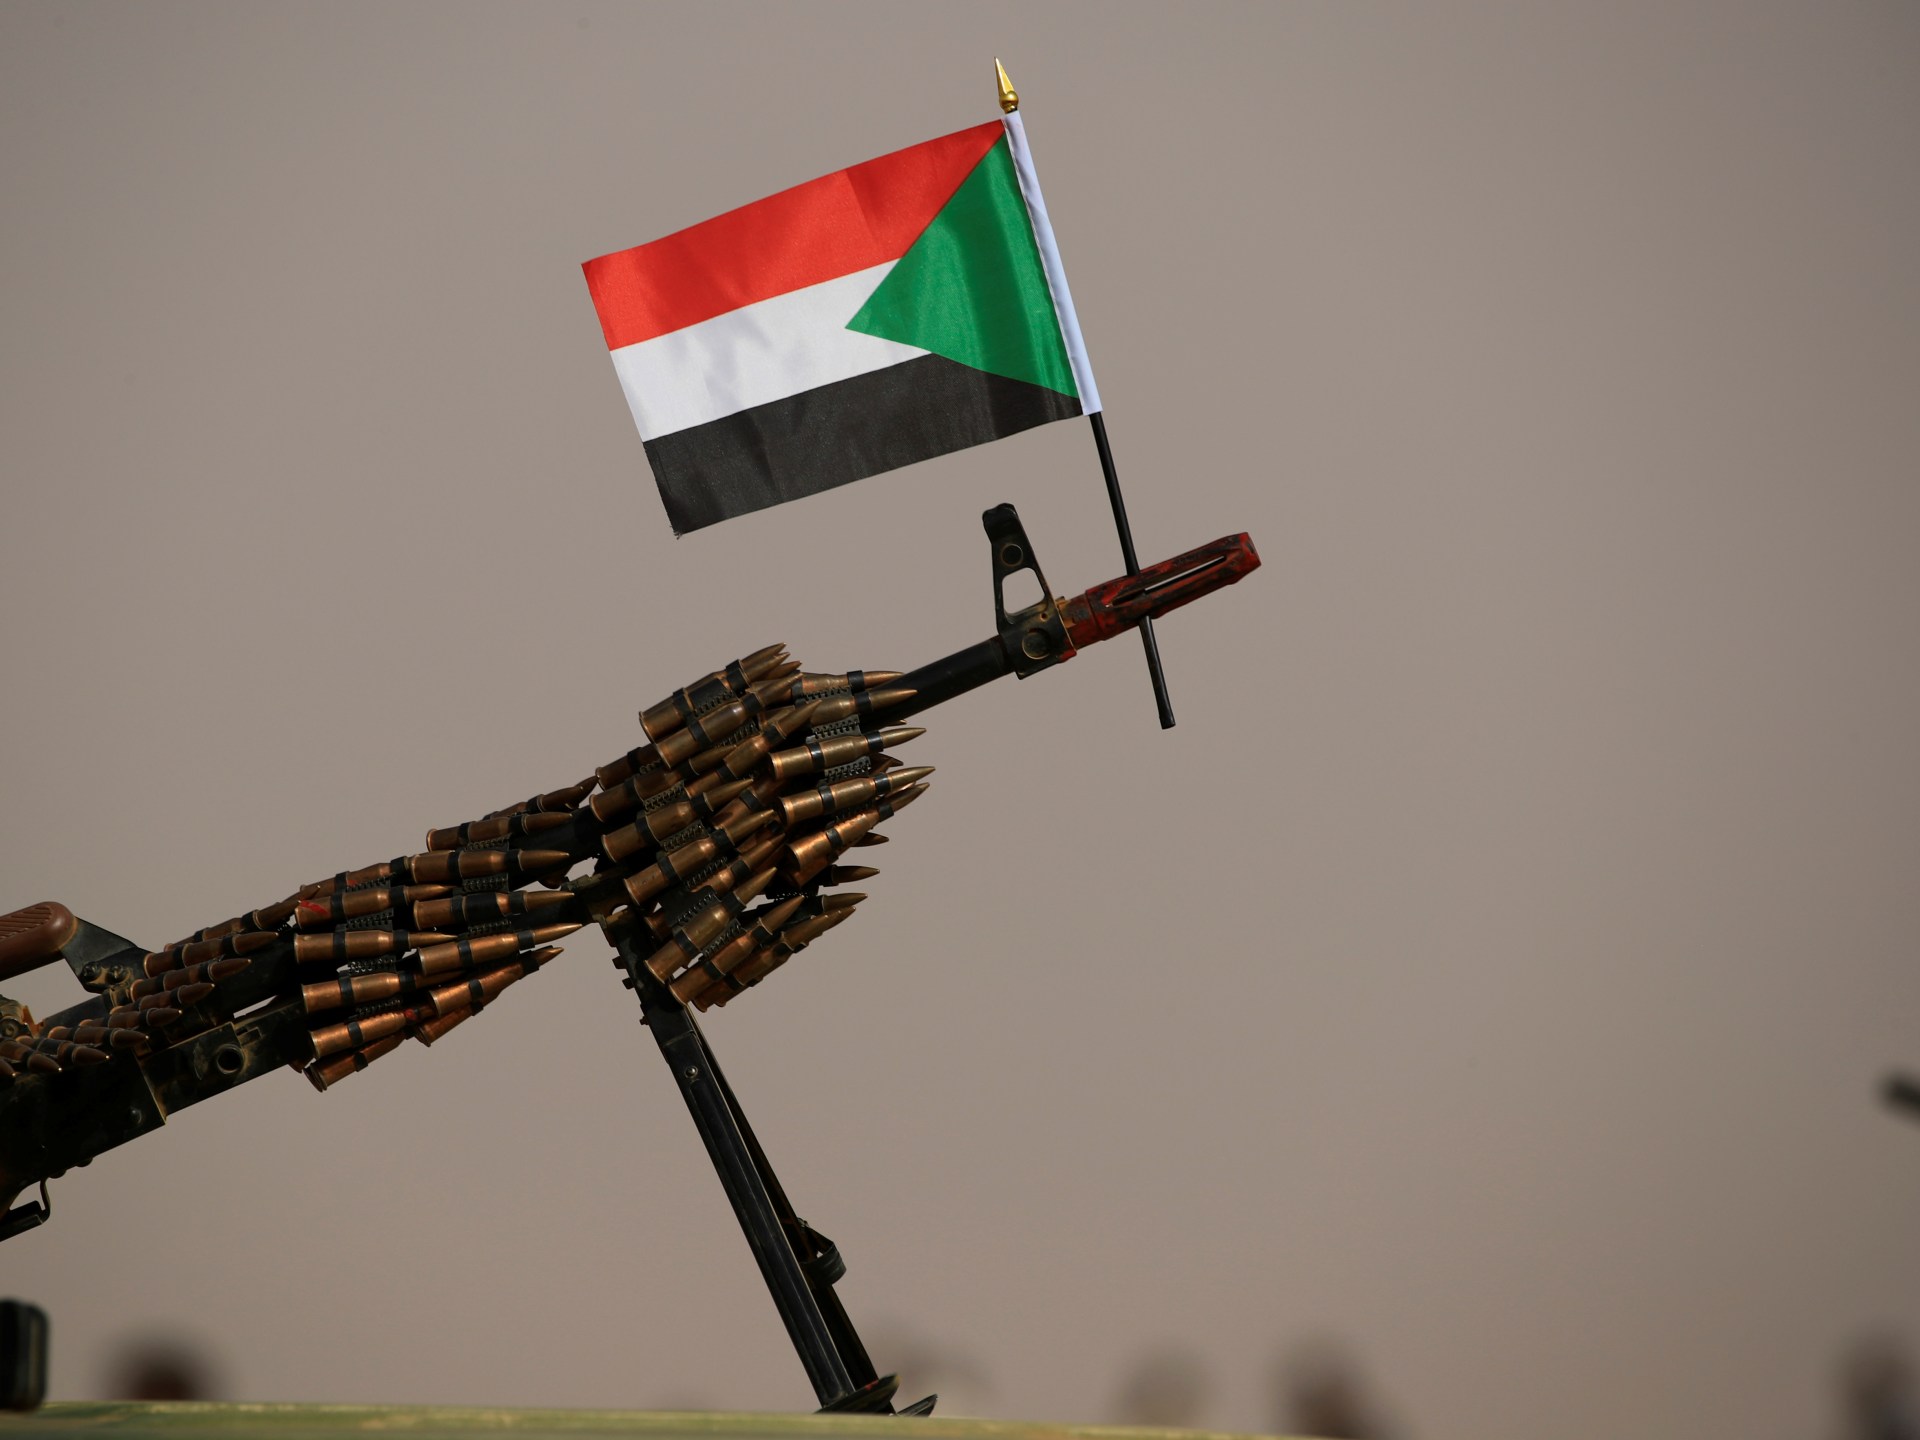 Membekukan aset bank RSF tidak akan menghentikannya di Sudan: Analis |  Berita Politik